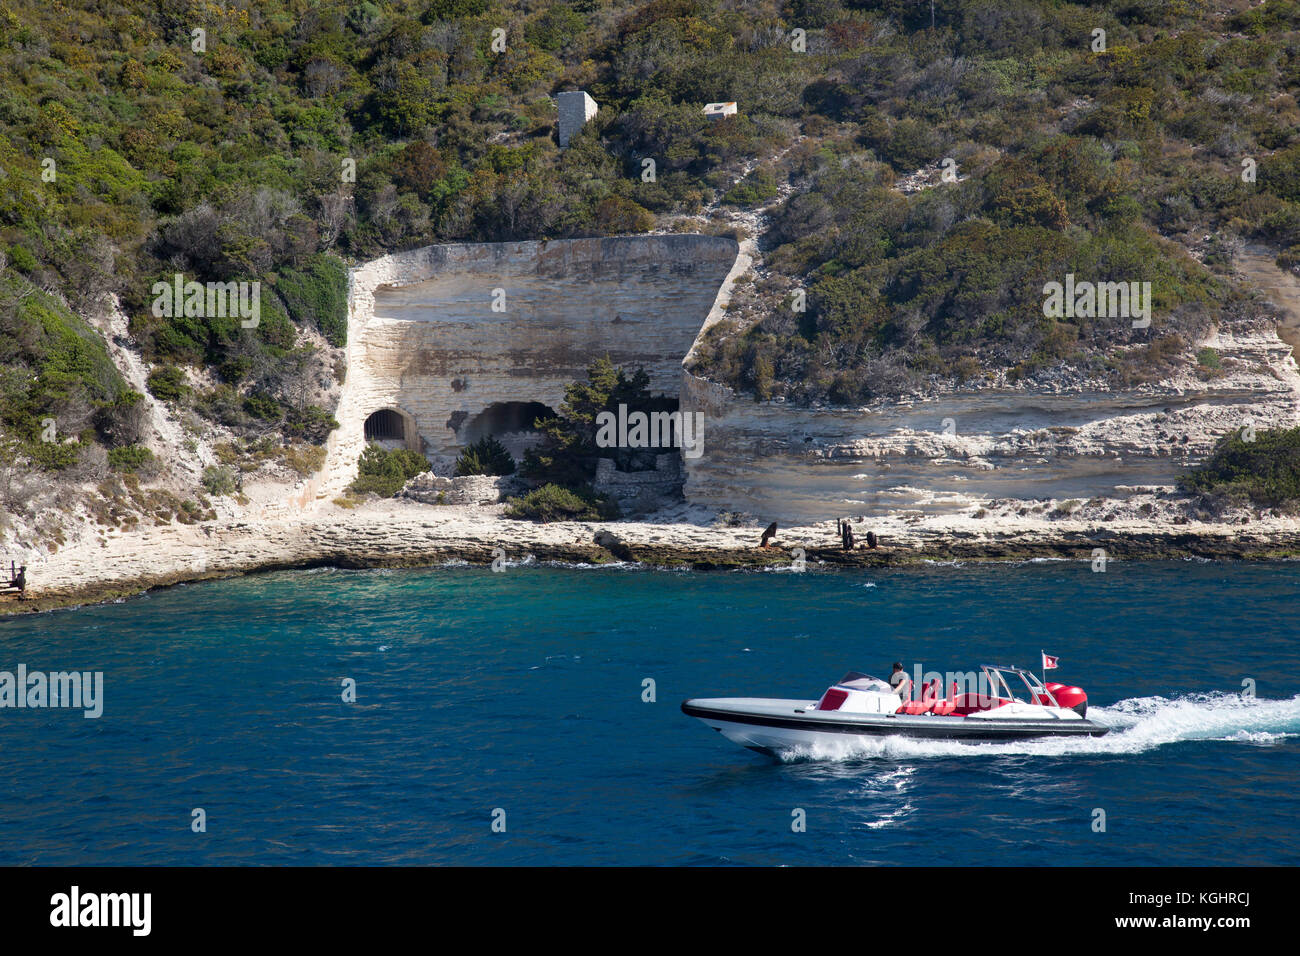 Excès de bateau à moteur dans la baie de Bonifacio sur fond de grottes dans les falaises de calcaire Banque D'Images